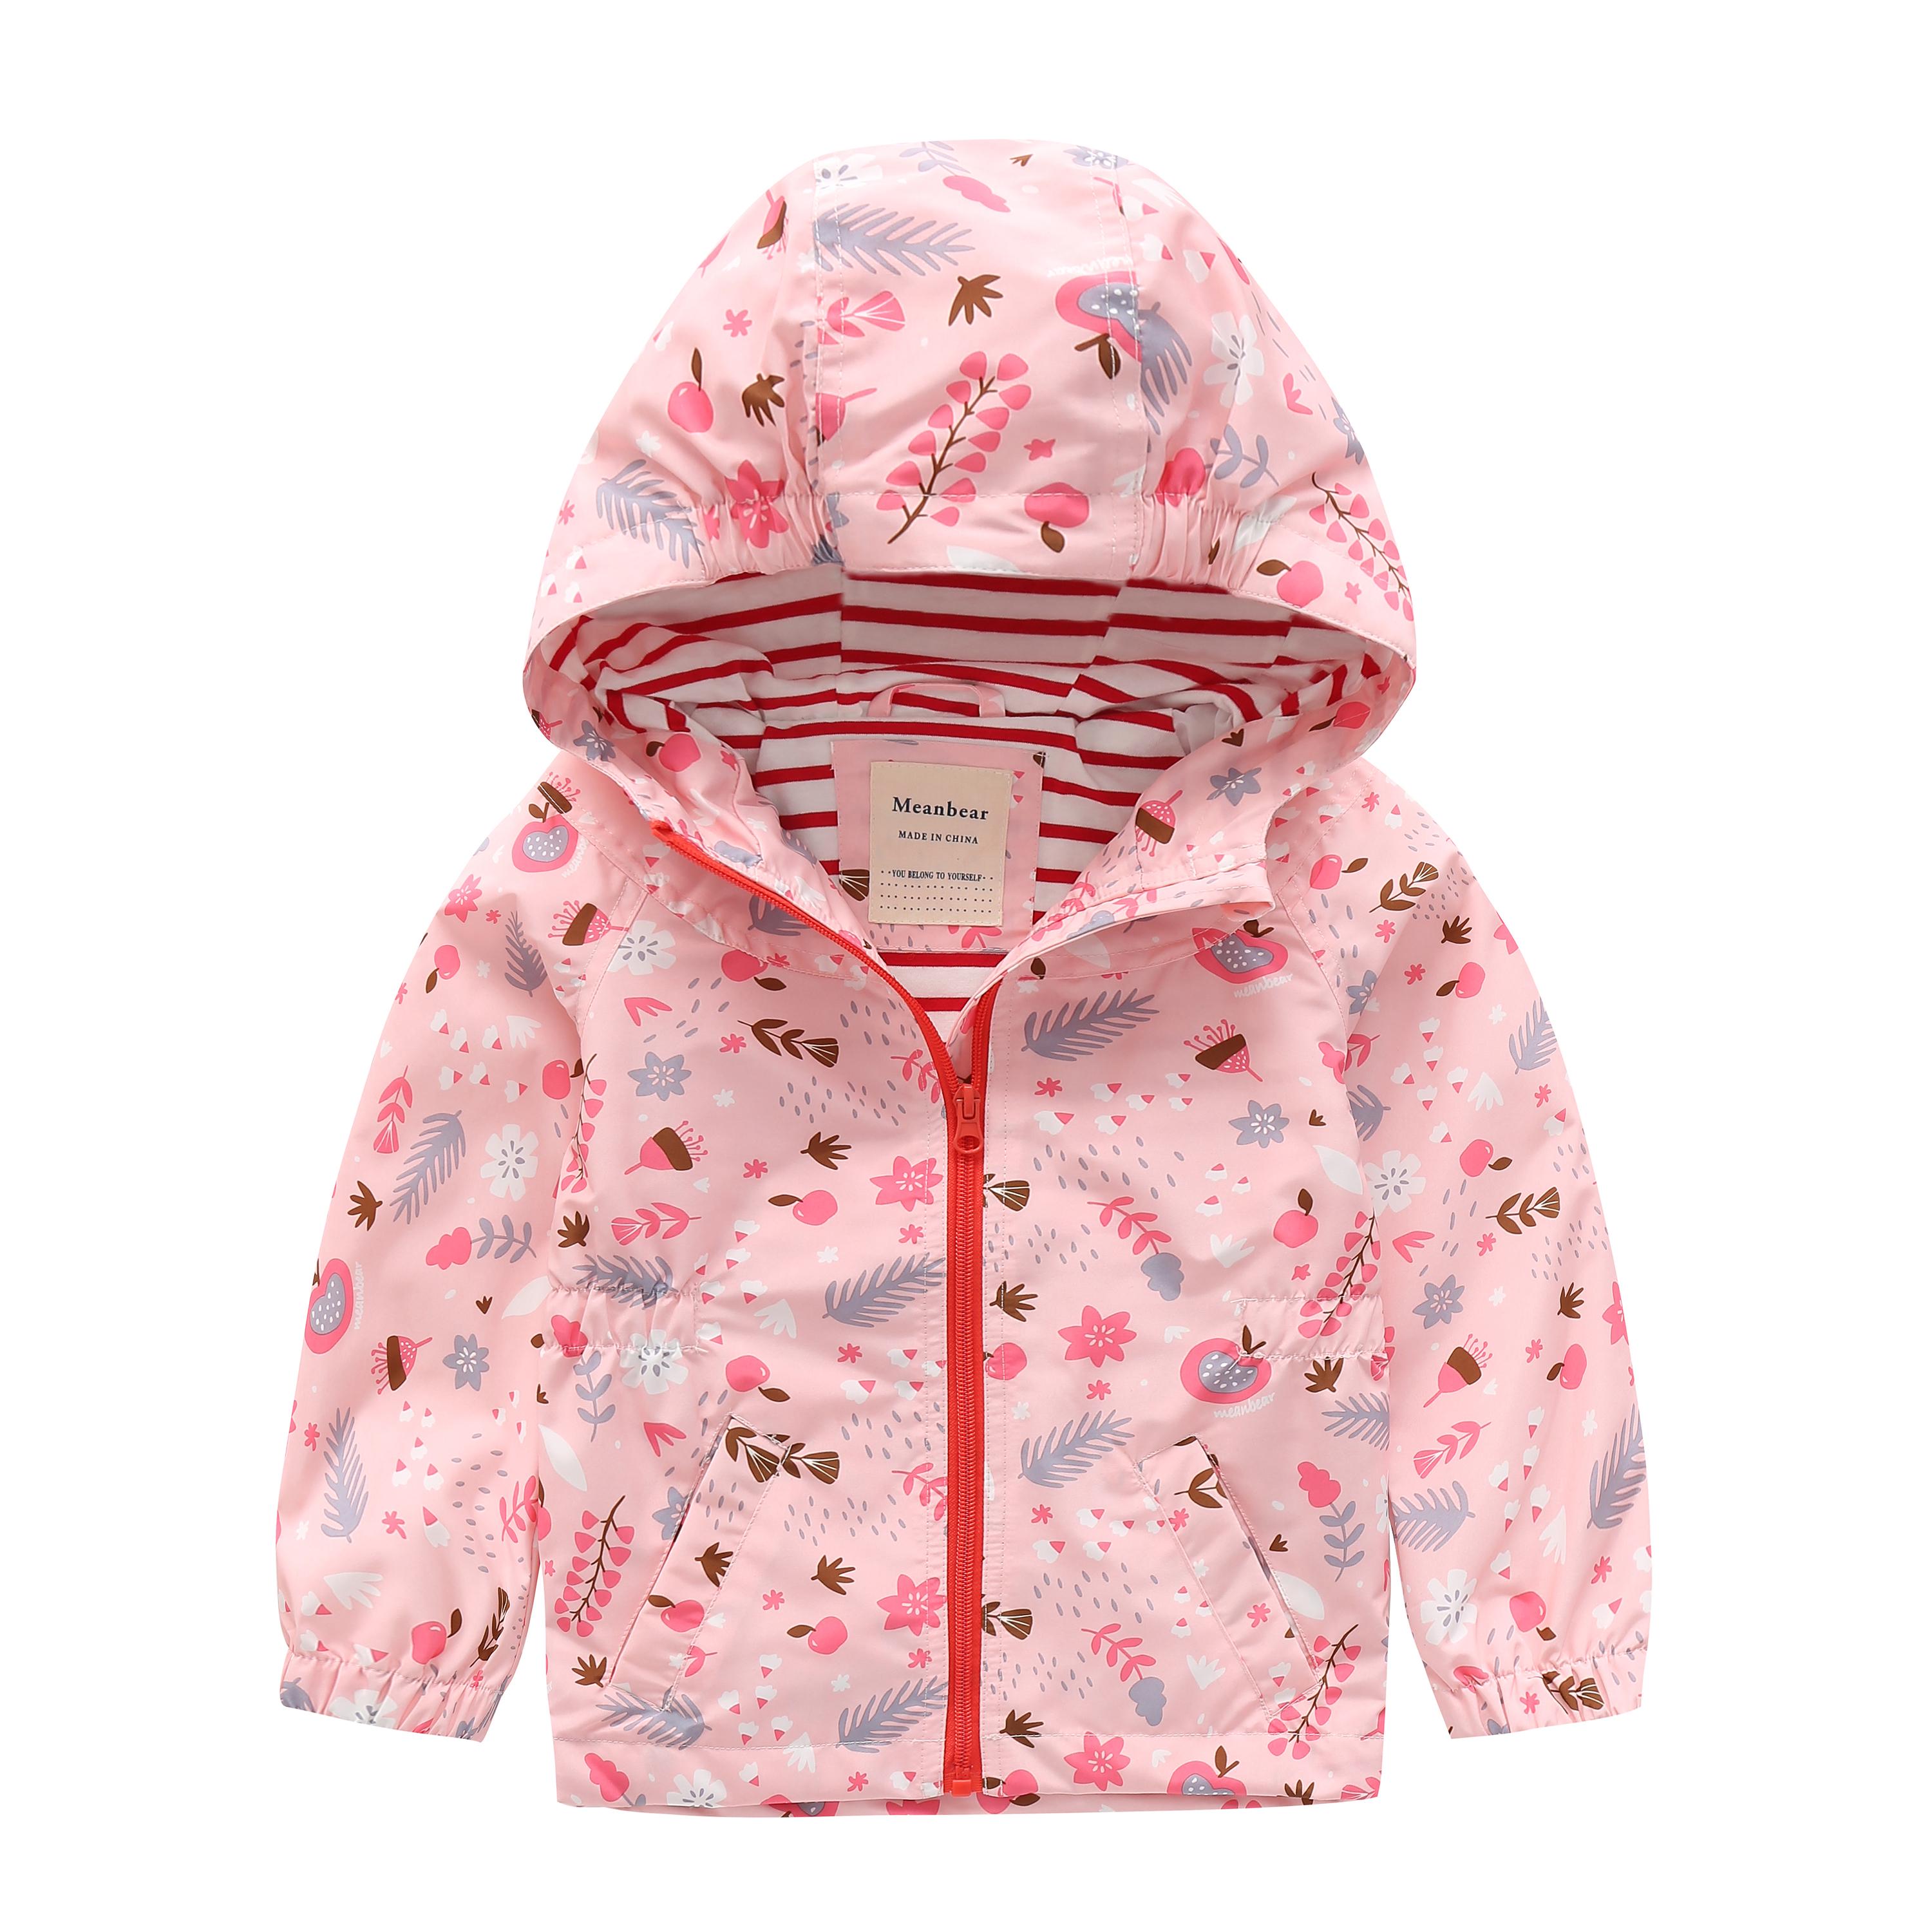 Куртка для девочки Meanbear Осенний сад с капюшоном р. 110 Розовый (51741)